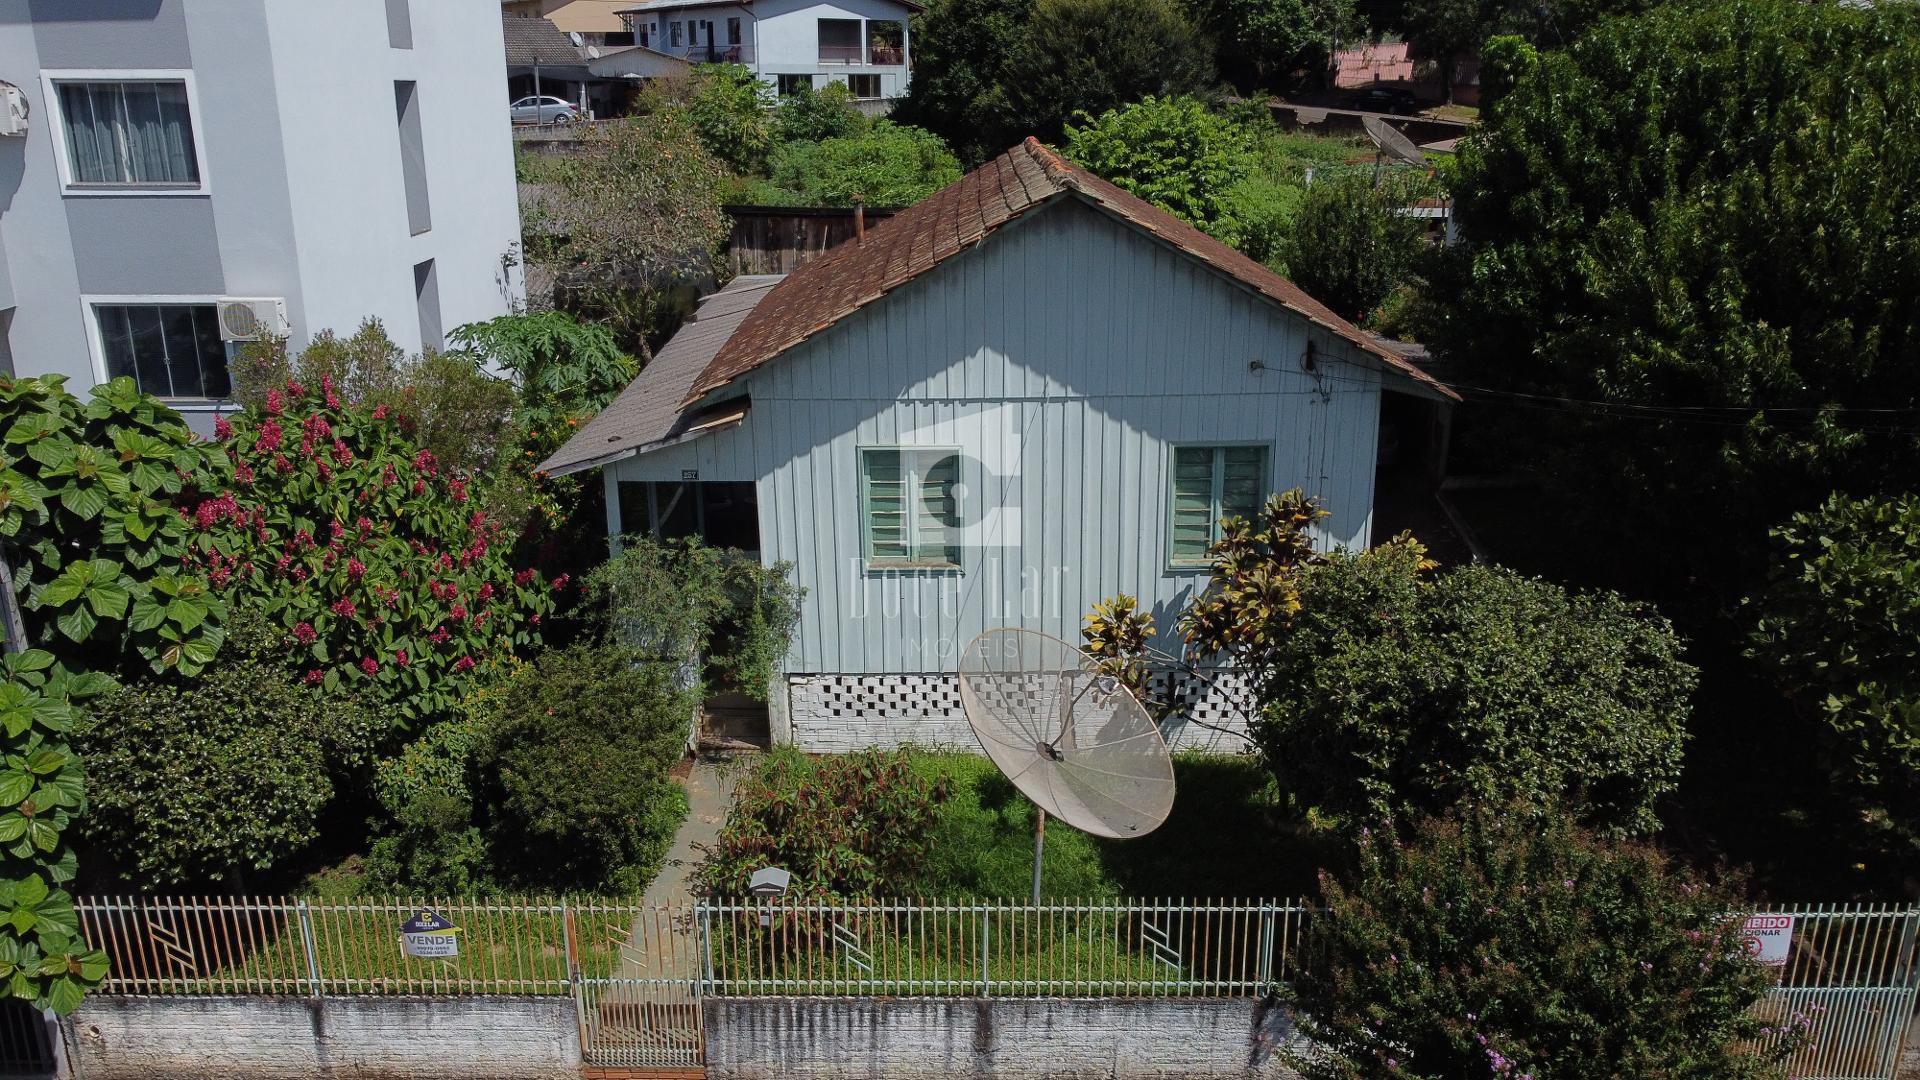 Casa à venda, com terreno amplo  Rua Ipiranga, Dois Vizinhos PR